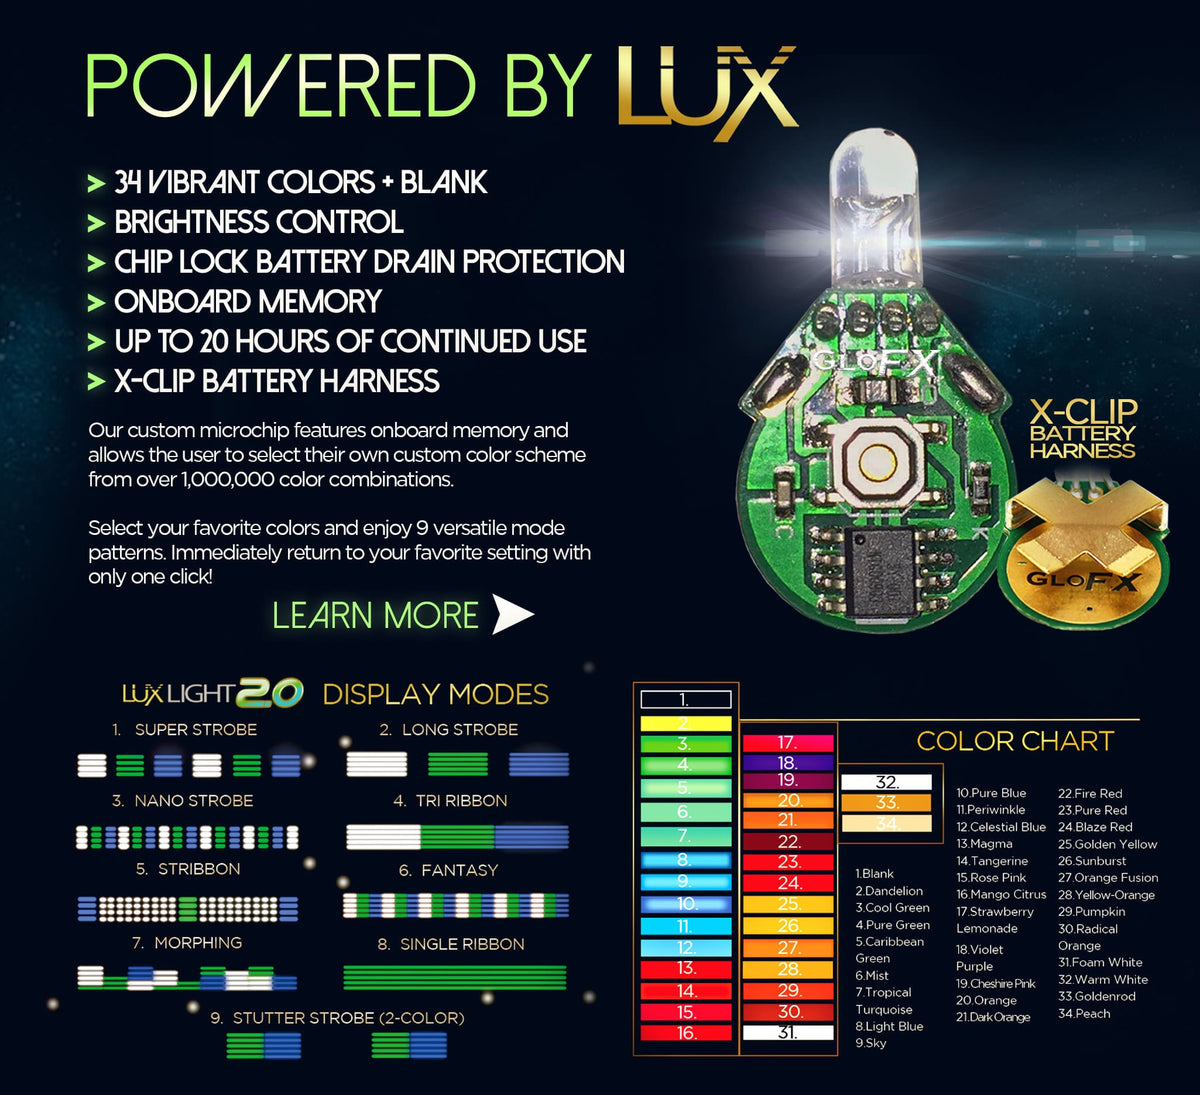 GloFX 3-LED Ion Orbit - Rave Wonderland